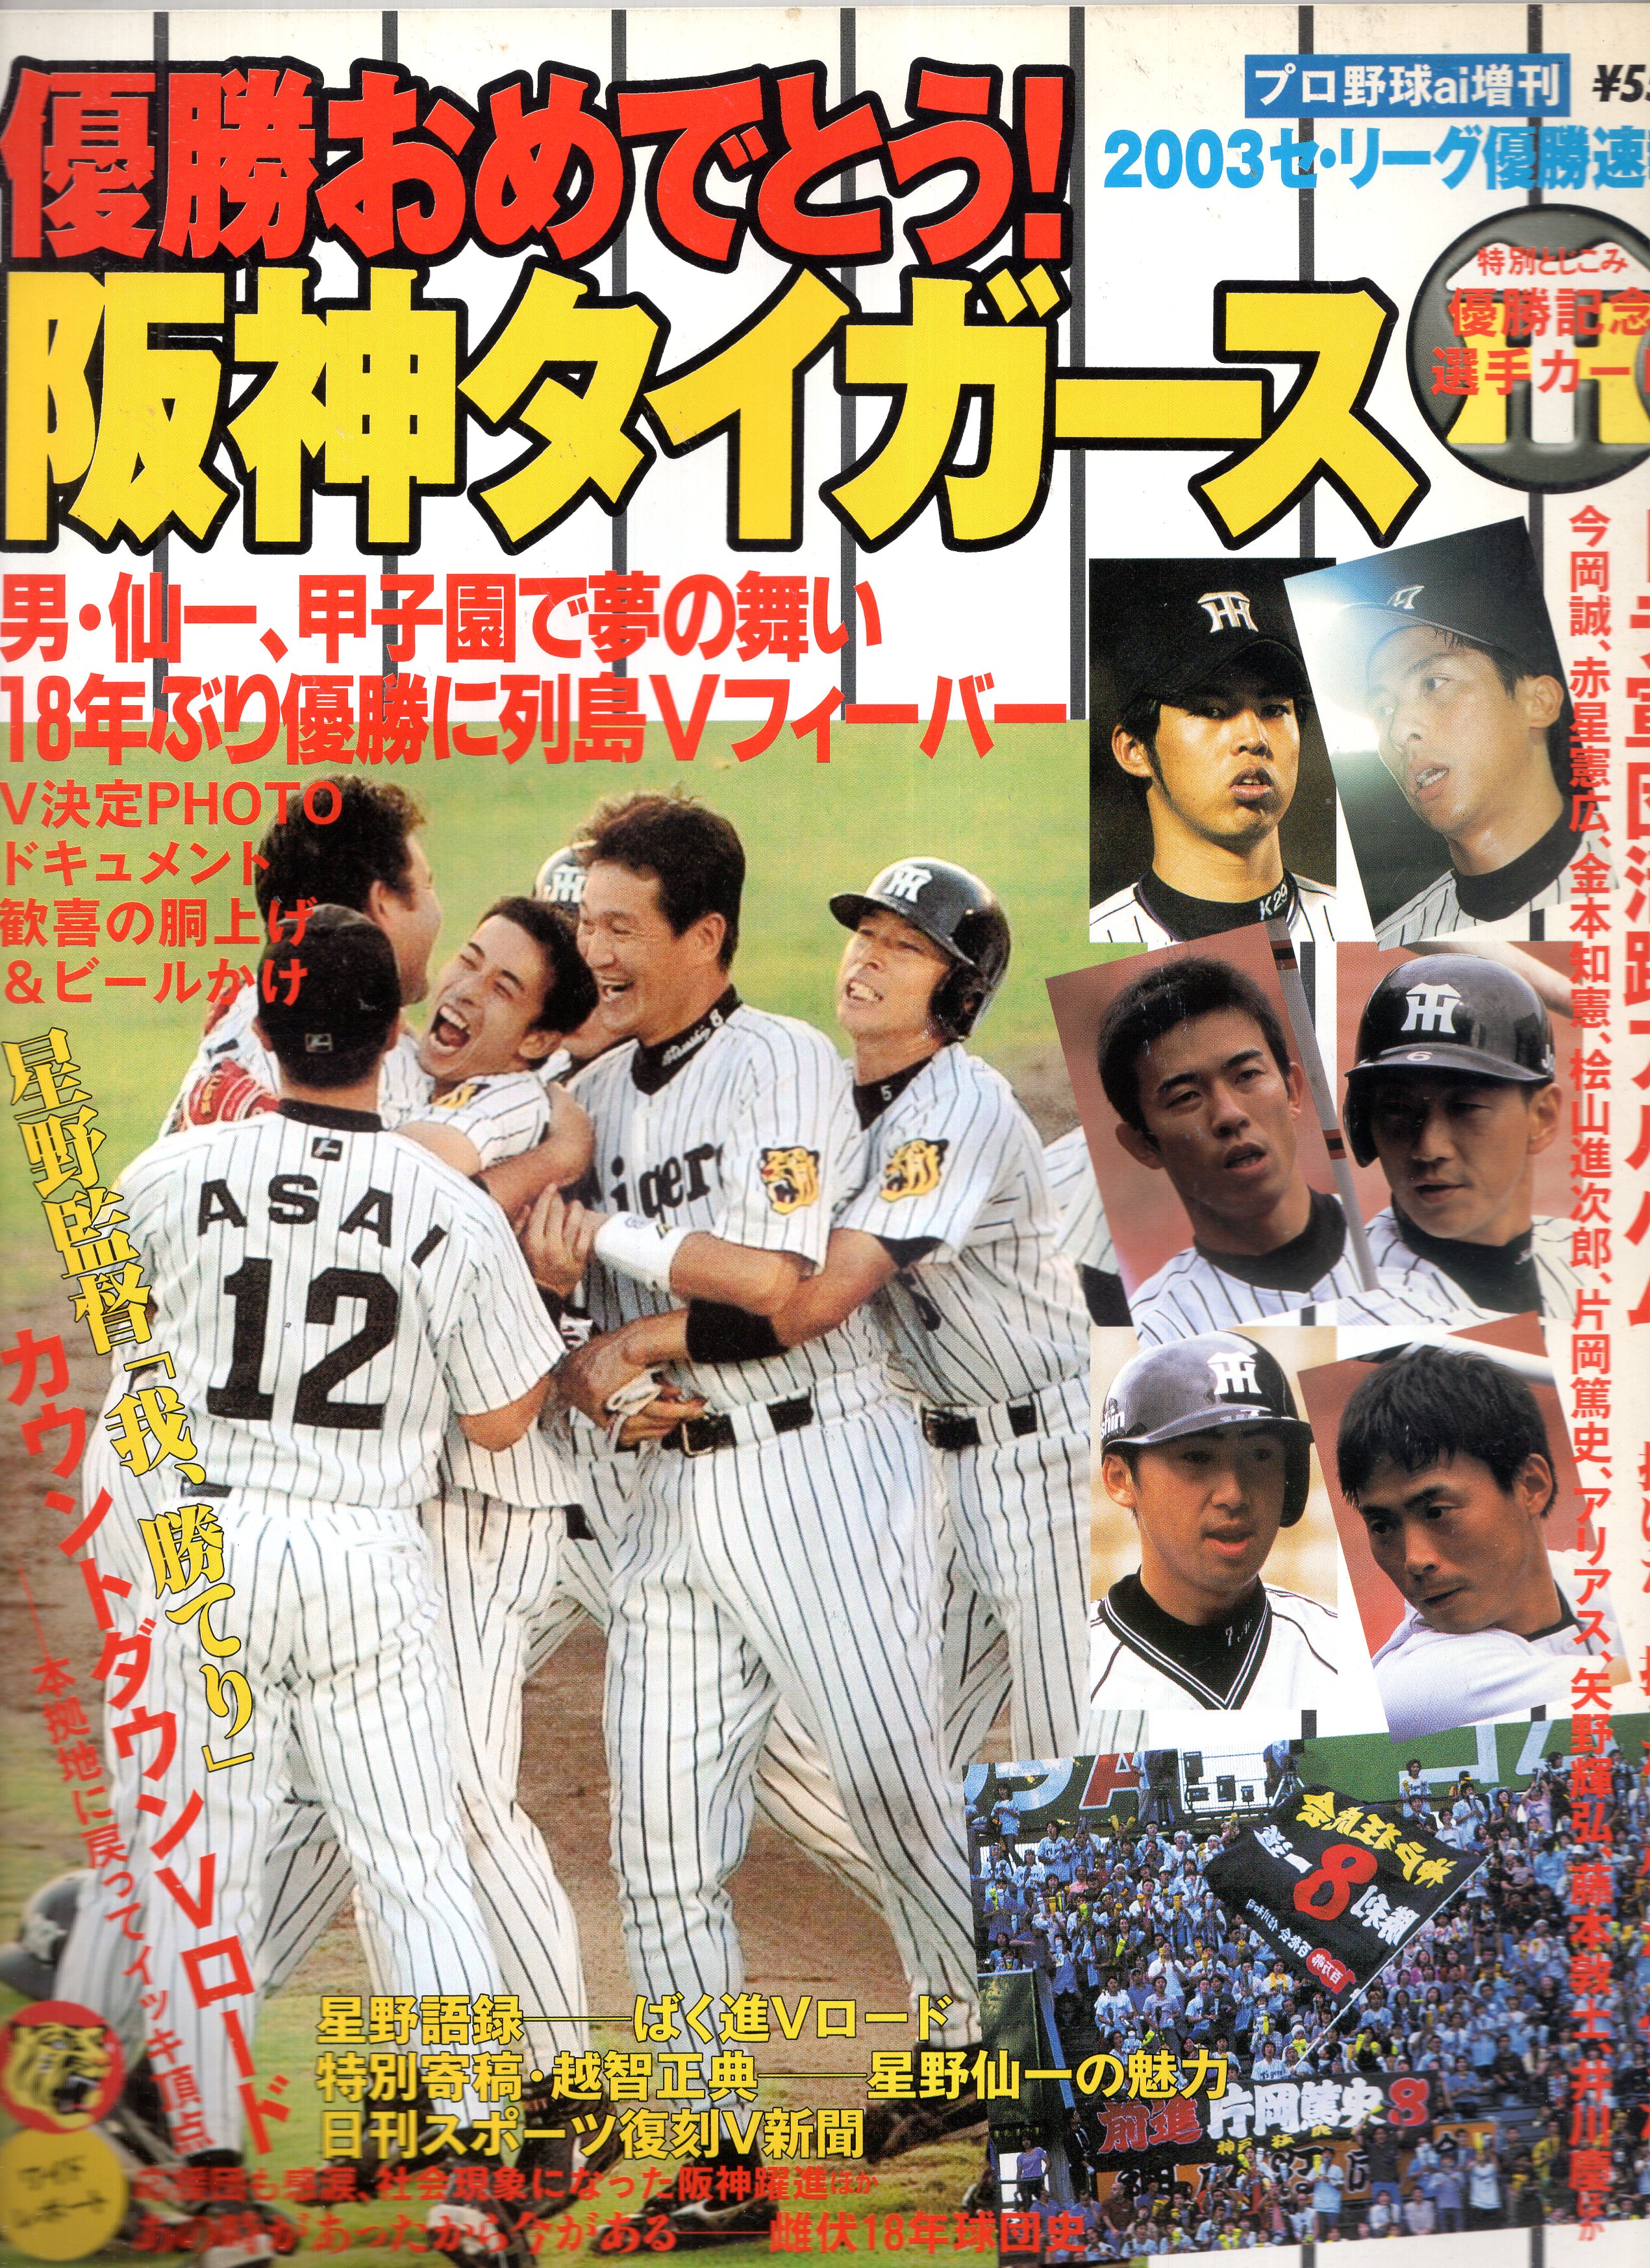 日刊スポーツ出版 プロ野球ai増刊 優勝おめでとう!阪神タイガース2003